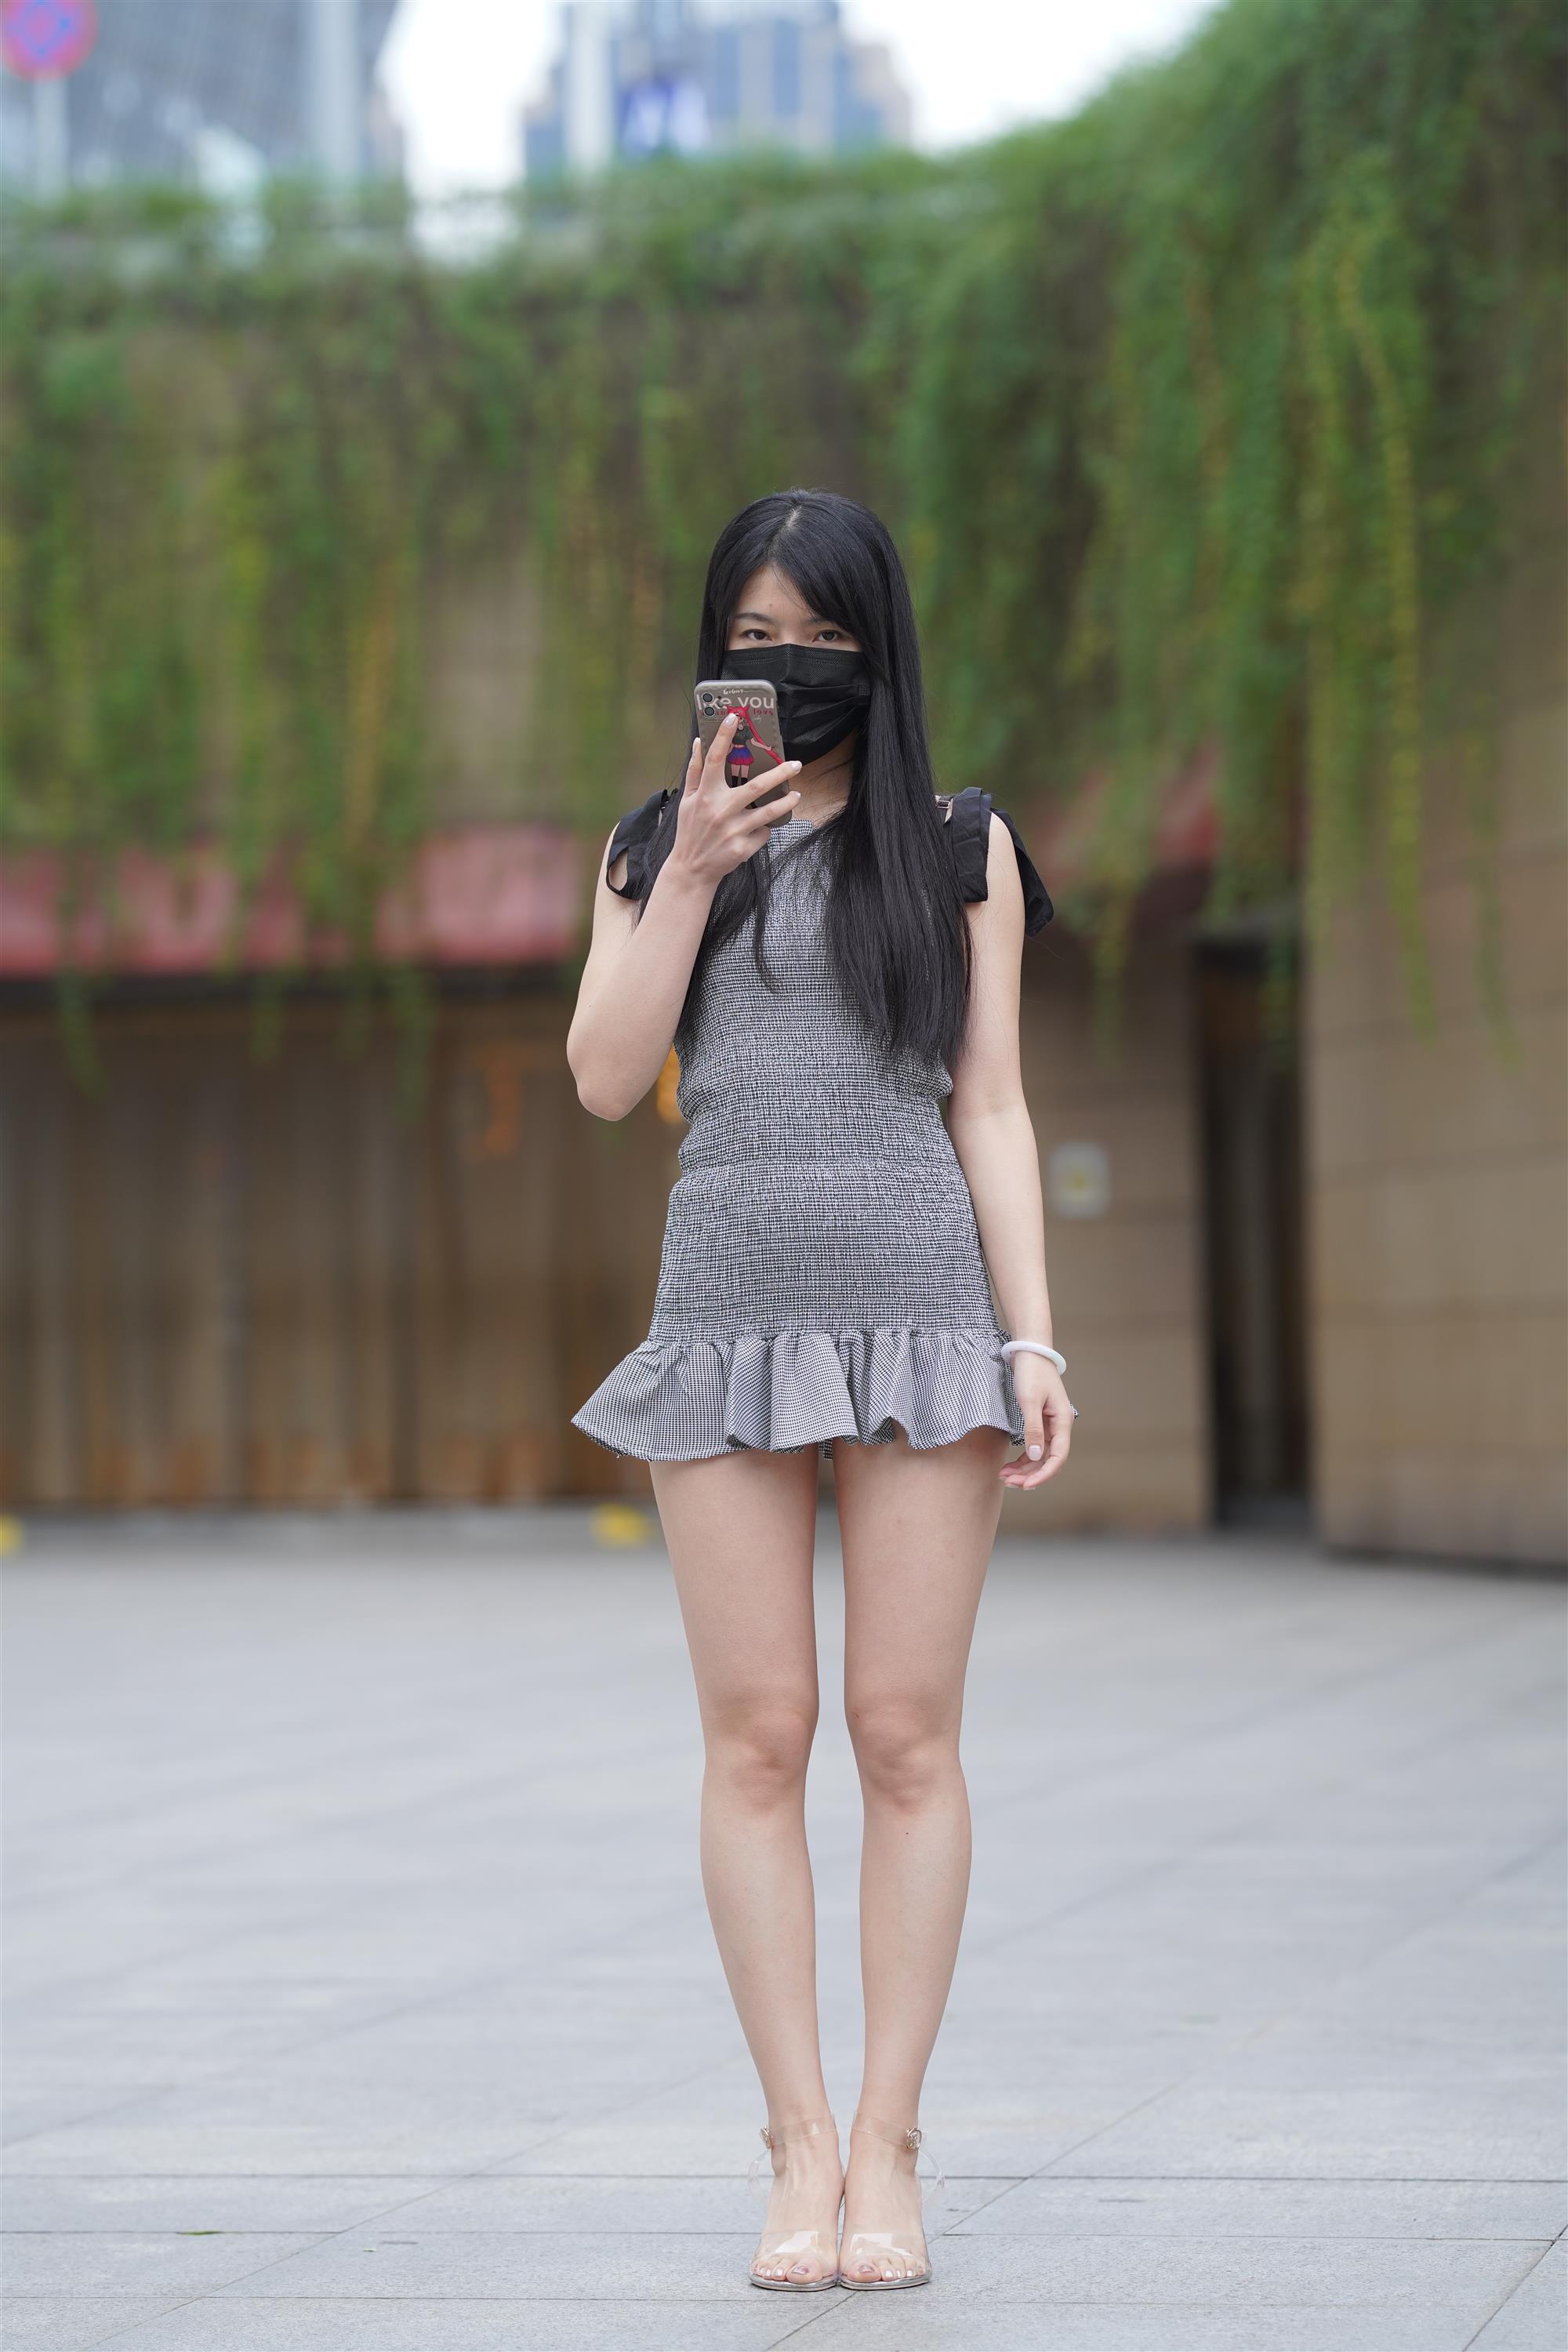 Street Girl In Short Skirt - 272.jpg